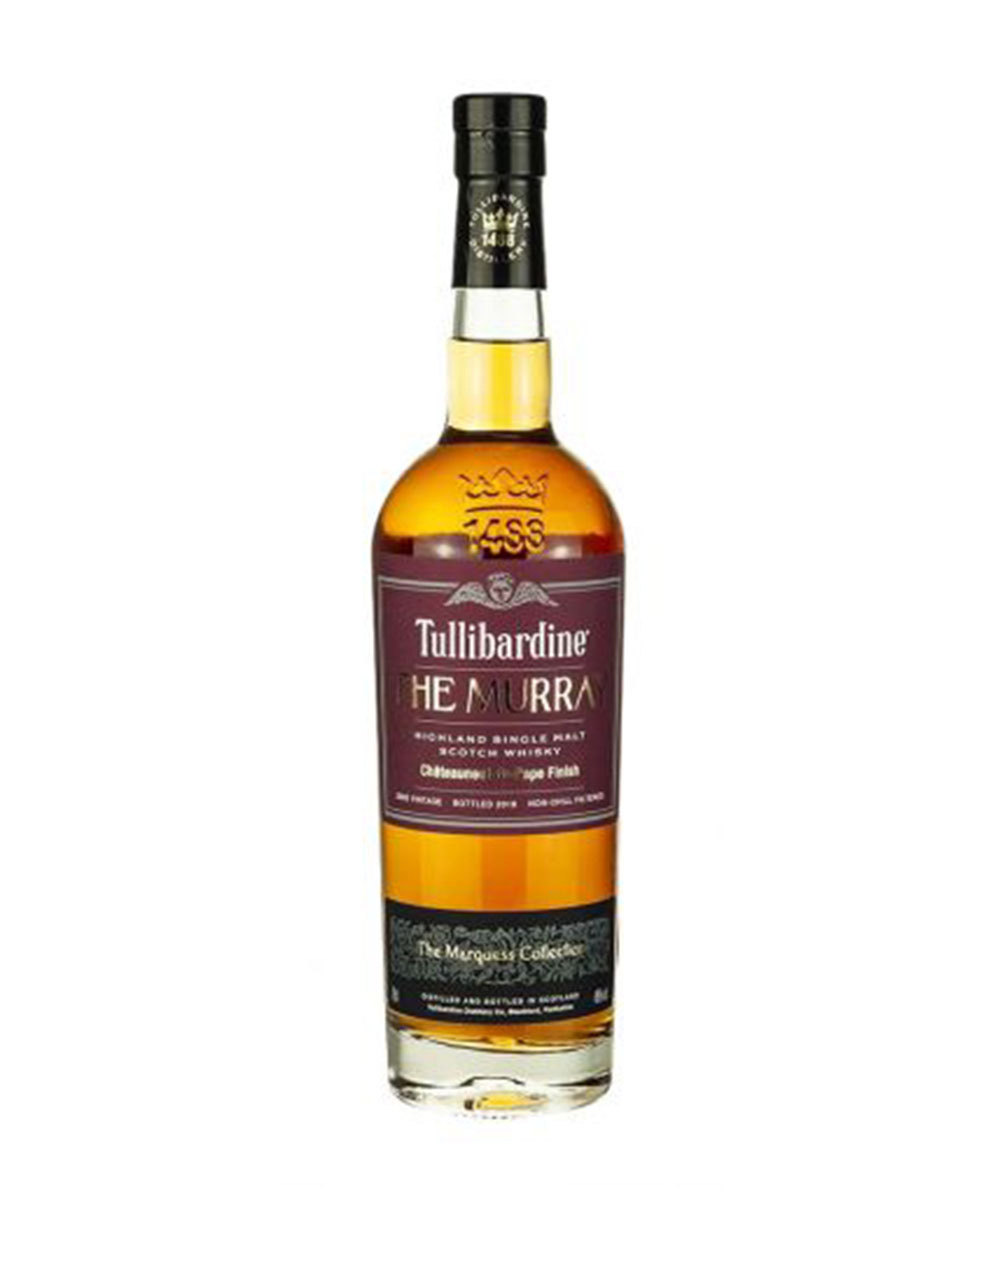 Tullibardine the Murray Chateauneuf du Pape Single Malt Scotch Whisky